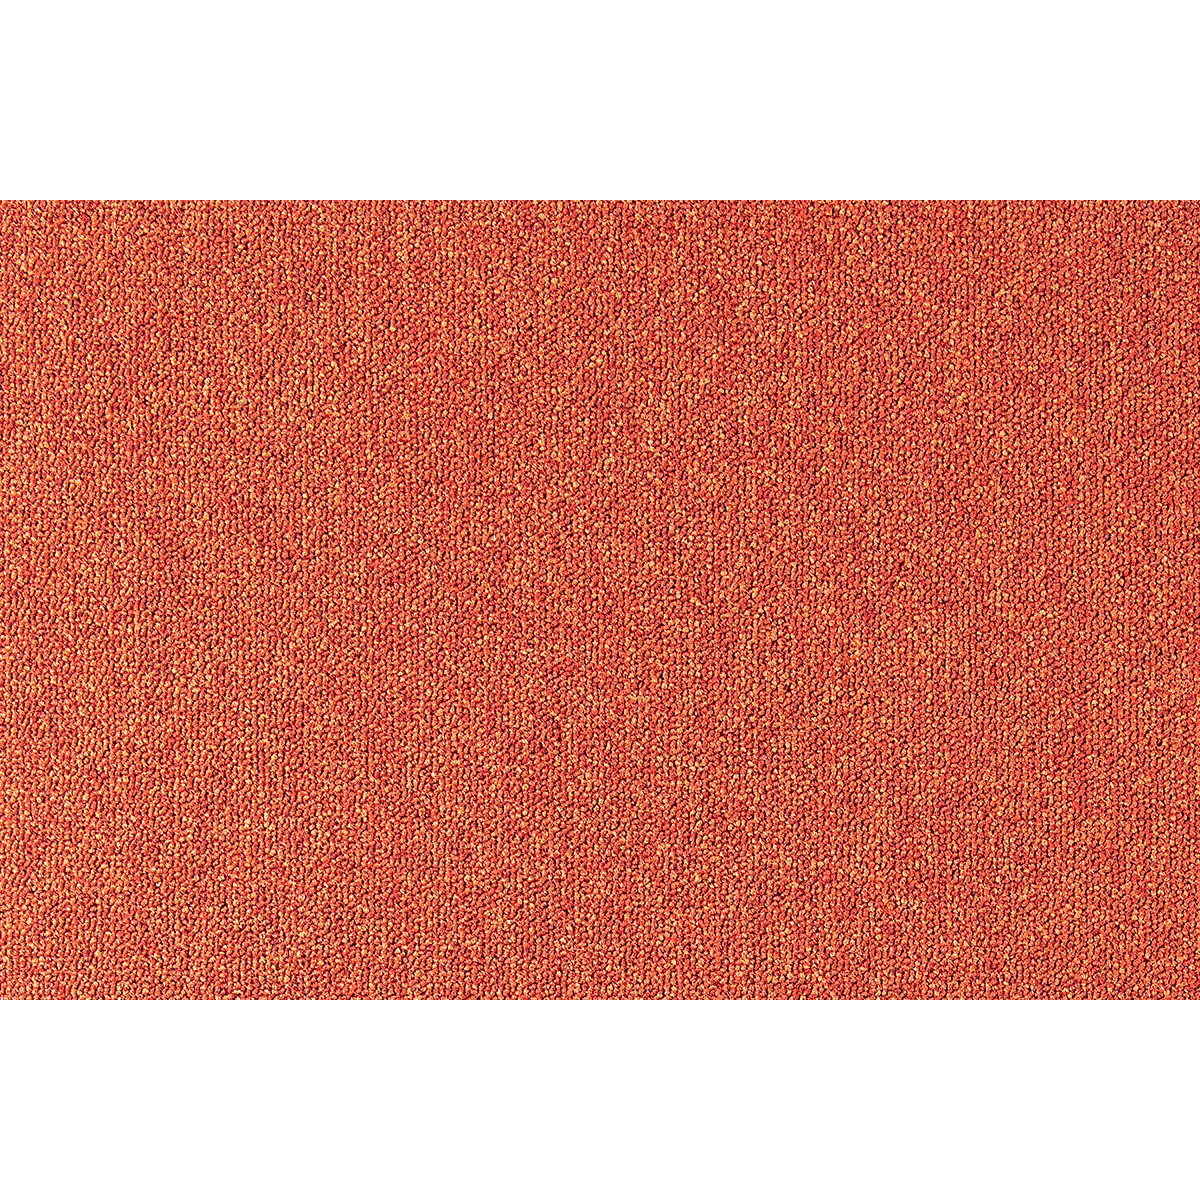 Metrážny koberec Cobalt SDN 64038 - AB oranžový, záťažový